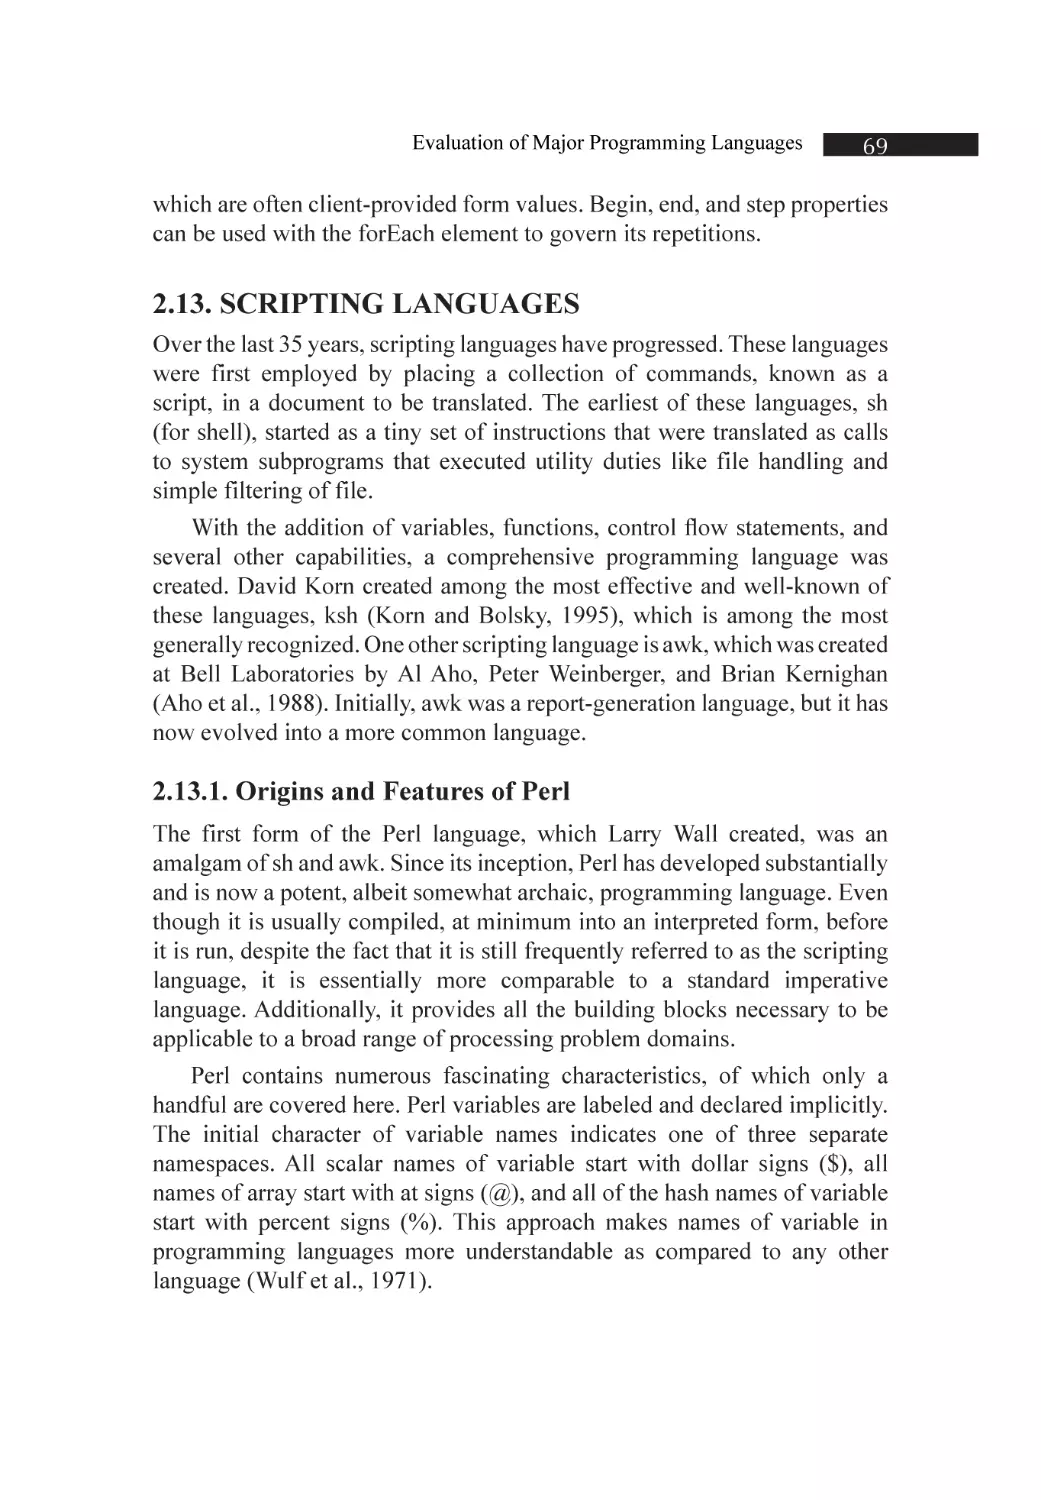 2.13. Scripting Languages